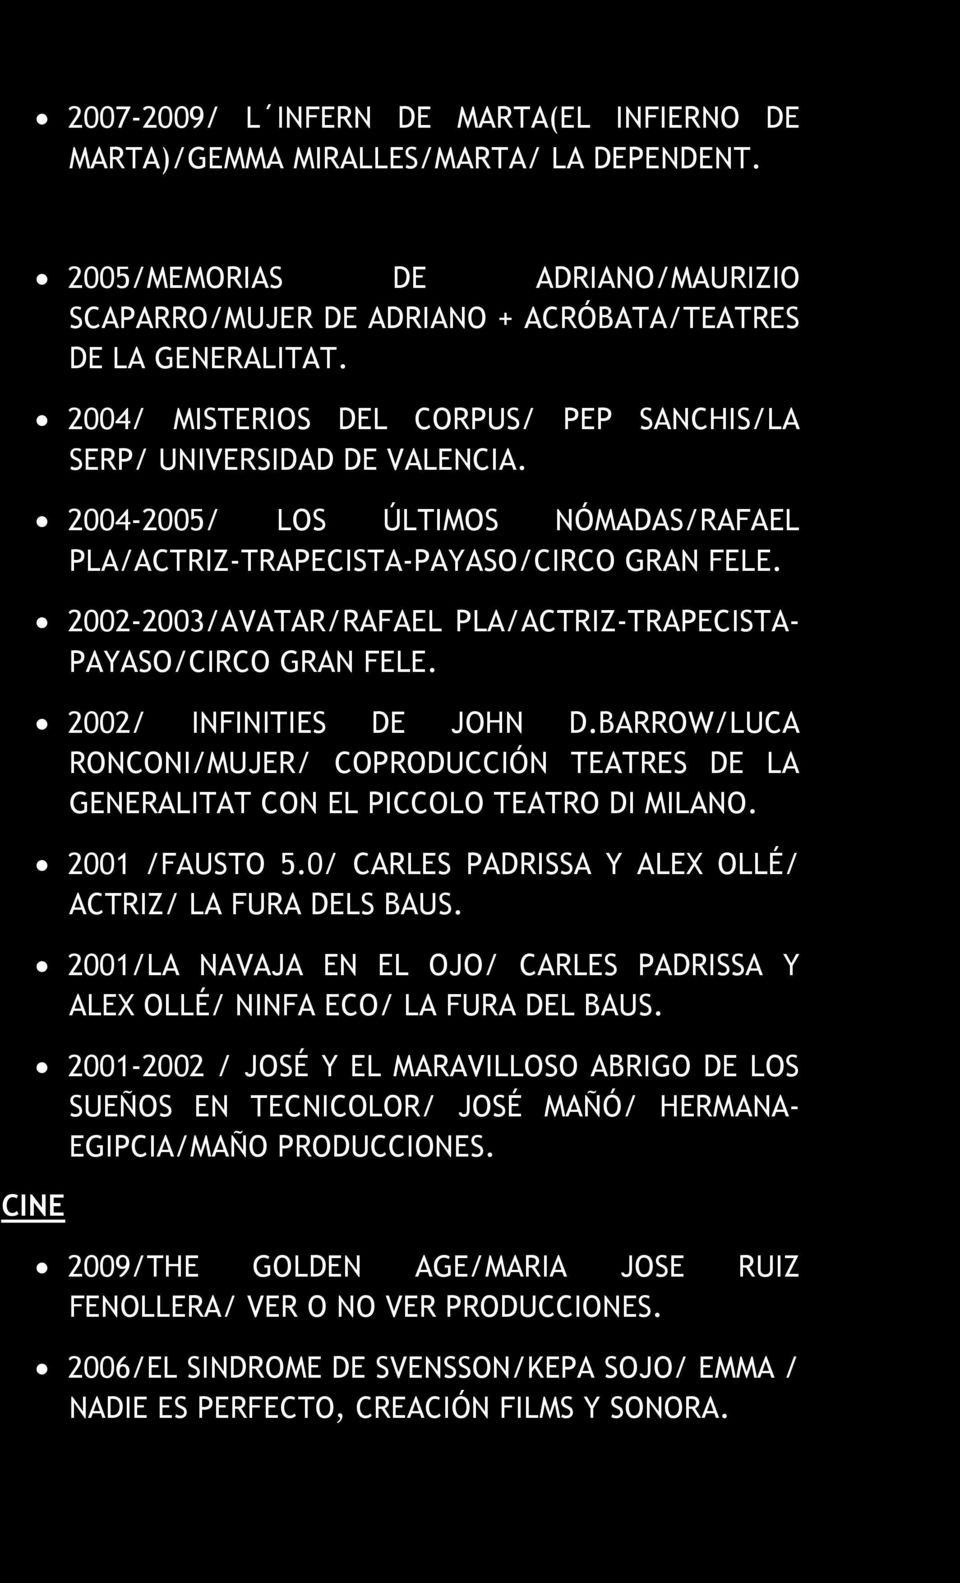 2002-2003/AVATAR/RAFAEL PLA/ACTRIZ-TRAPECISTA- PAYASO/CIRCO GRAN FELE. 2002/ INFINITIES DE JOHN D.BARROW/LUCA RONCONI/MUJER/ COPRODUCCIÓN TEATRES DE LA GENERALITAT CON EL PICCOLO TEATRO DI MILANO.